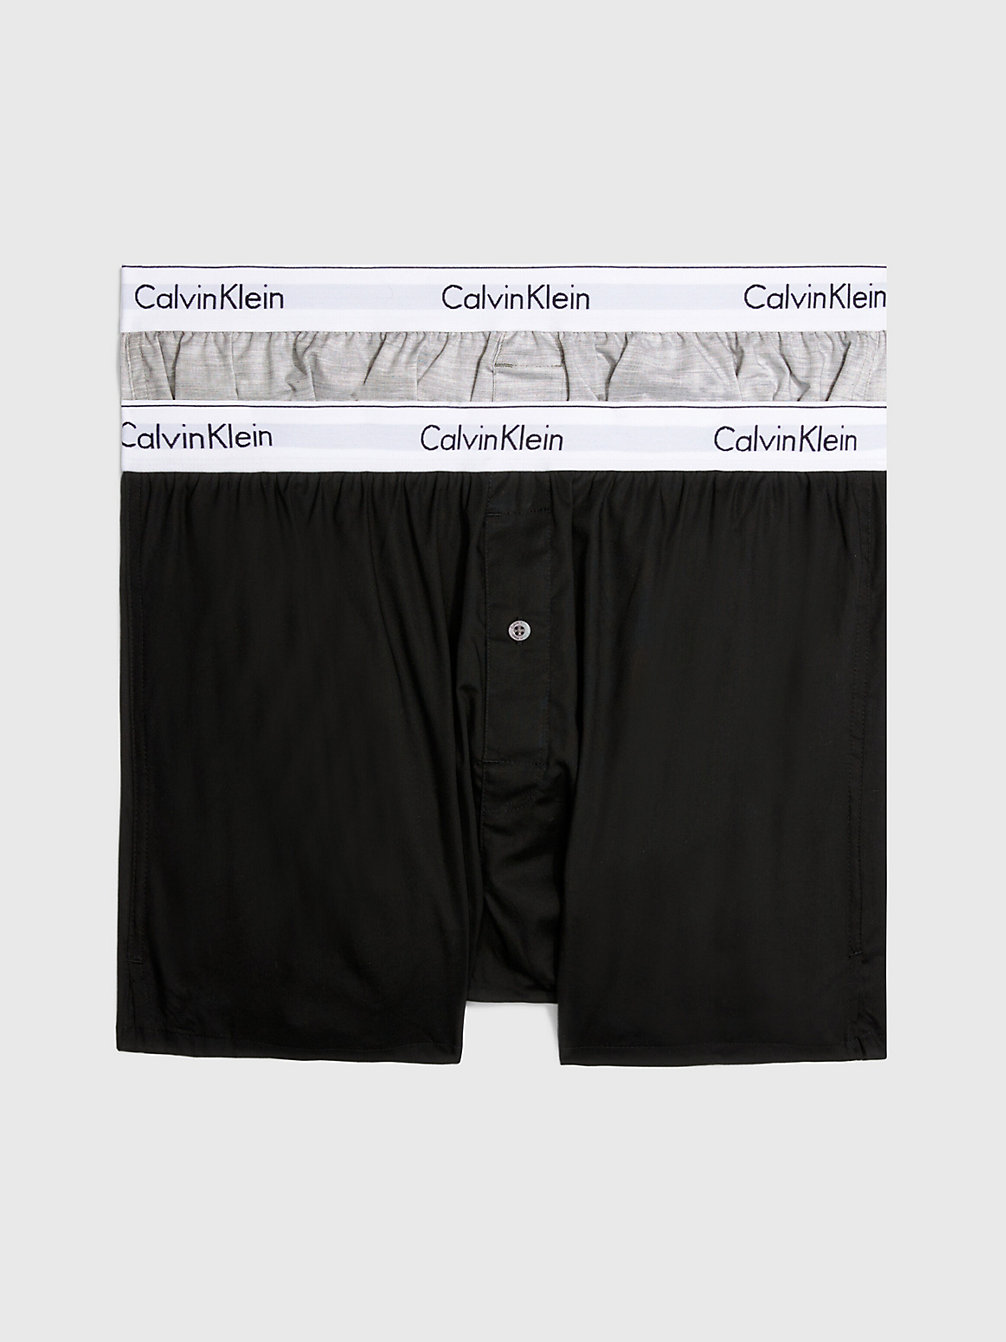 BLACK/GREY HEATHER > 2er-Pack Slim Fit Boxershorts - Modern Cotton > undefined men - Calvin Klein